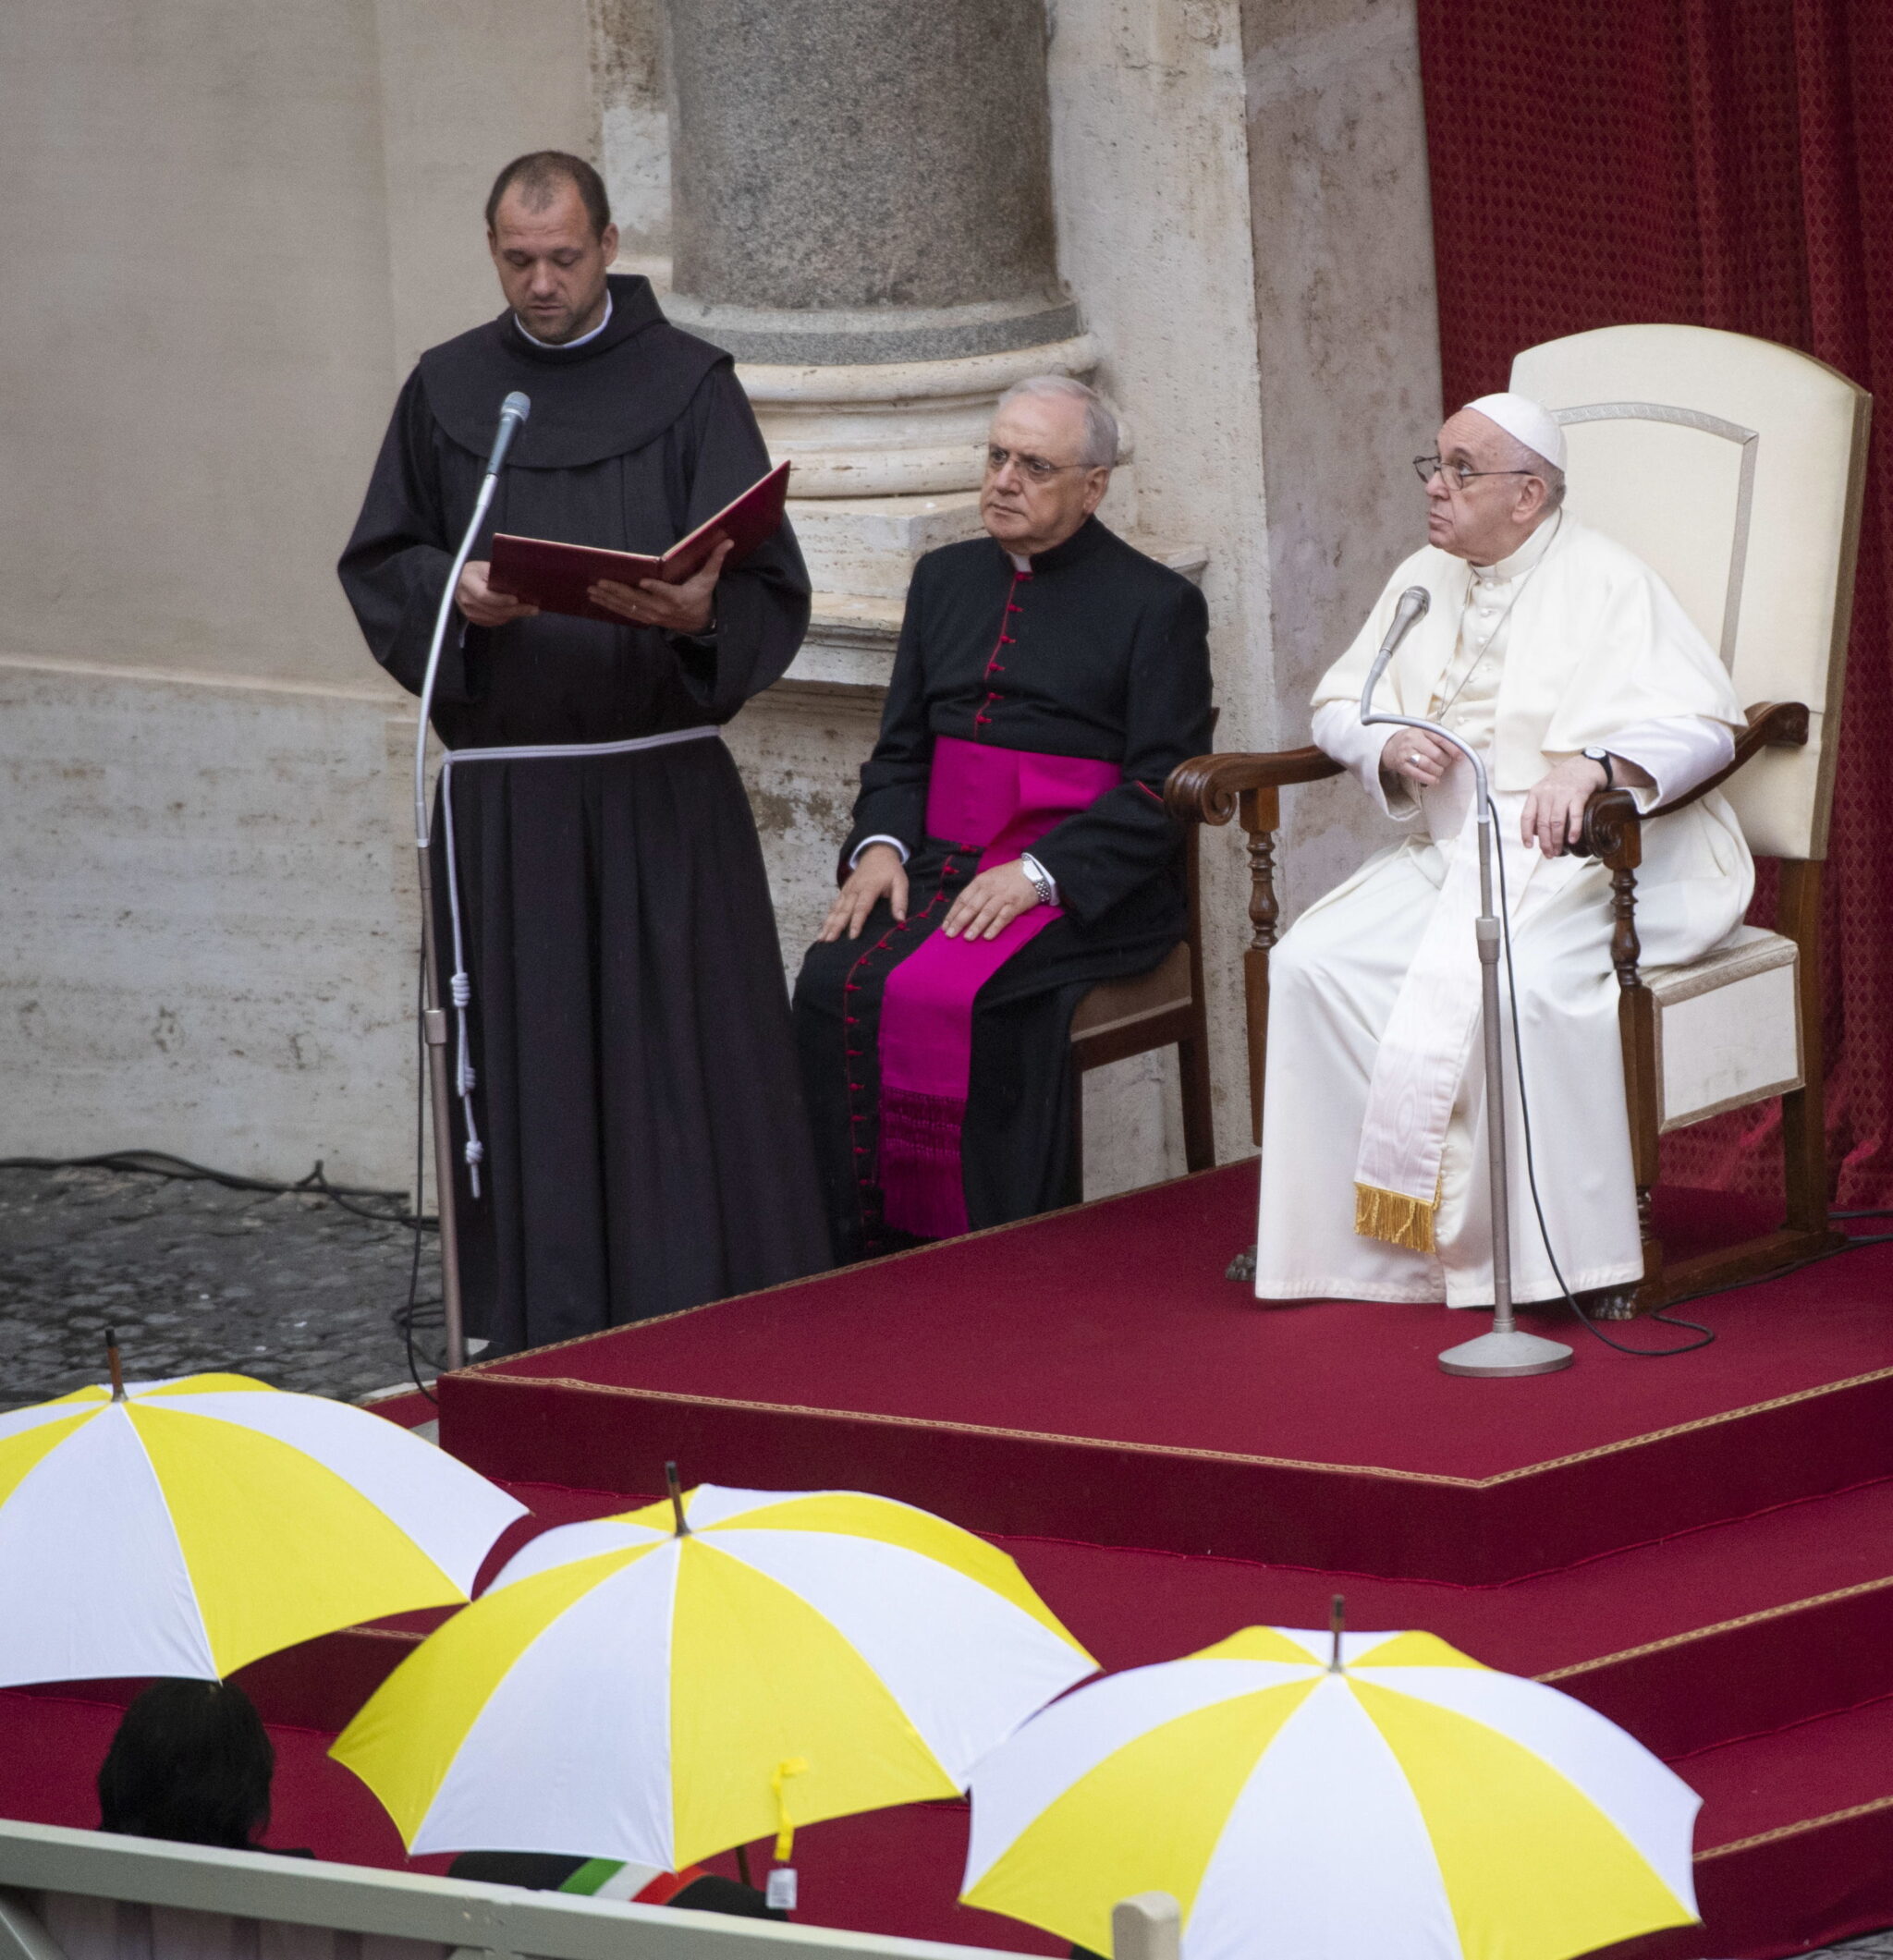 Deszczowy dzień w Rzymie - audiencja papieska. fot. PA/CLAUDIO PERI 